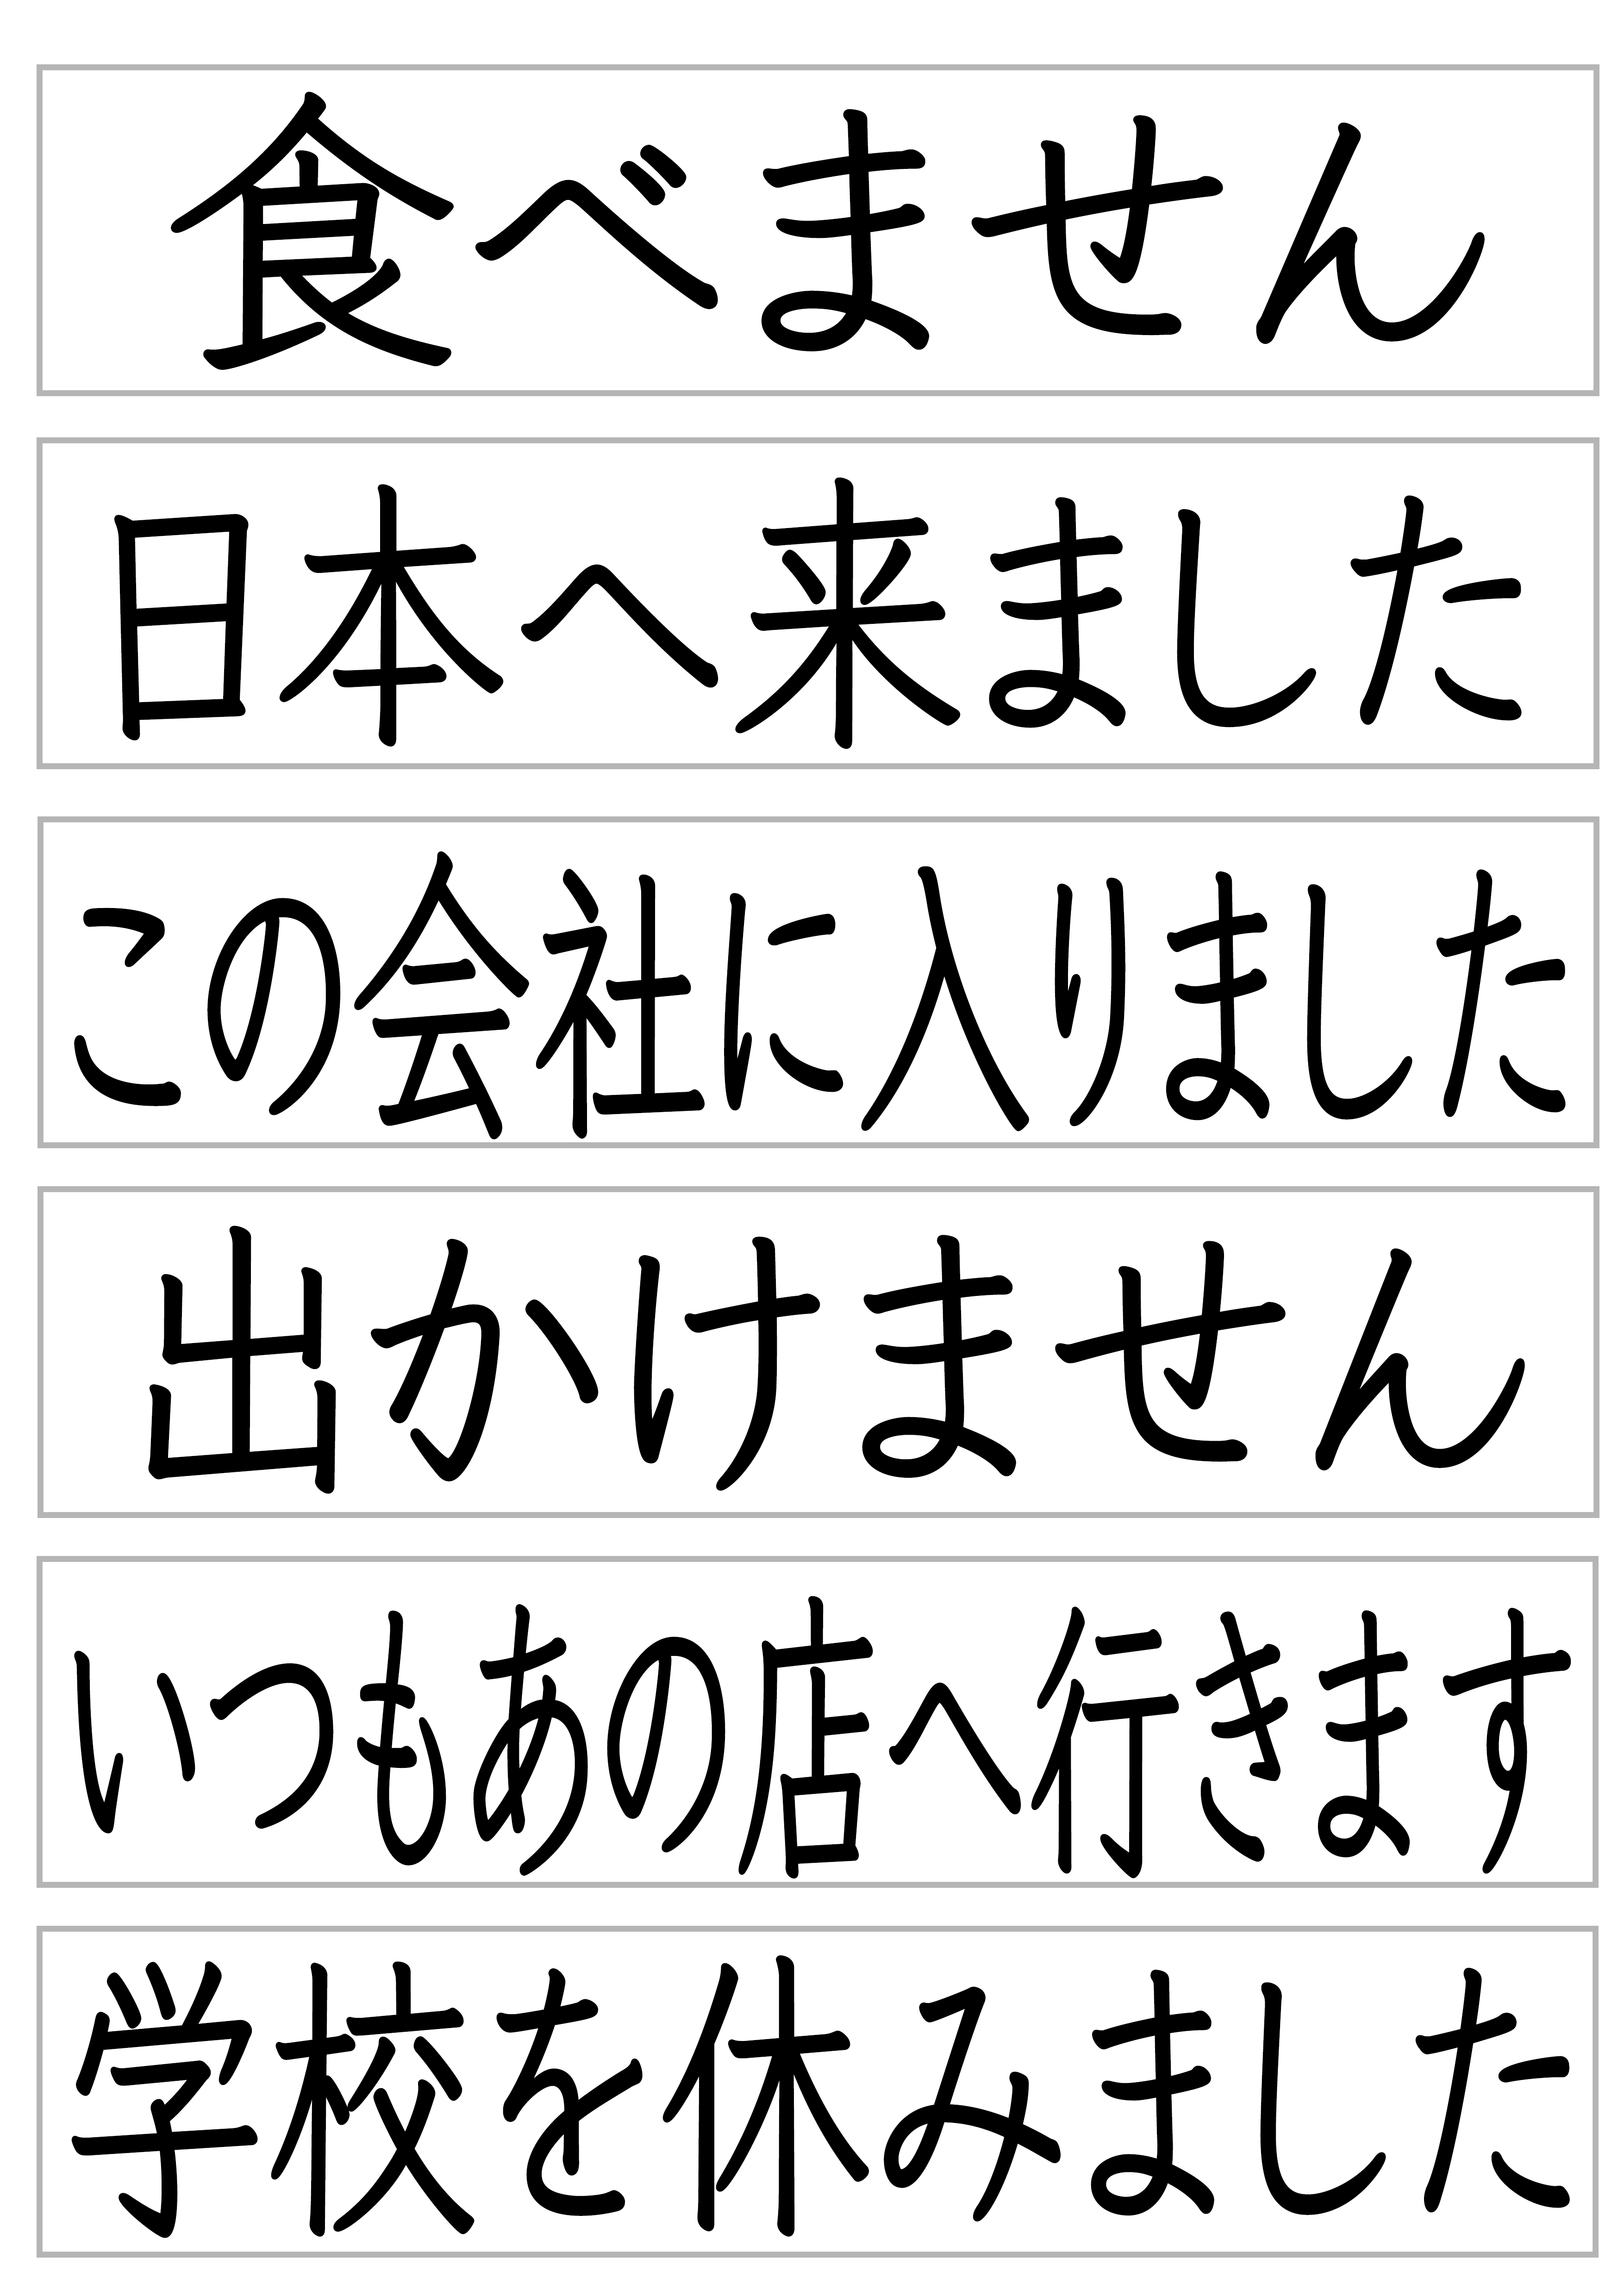 みんなの日本語28課